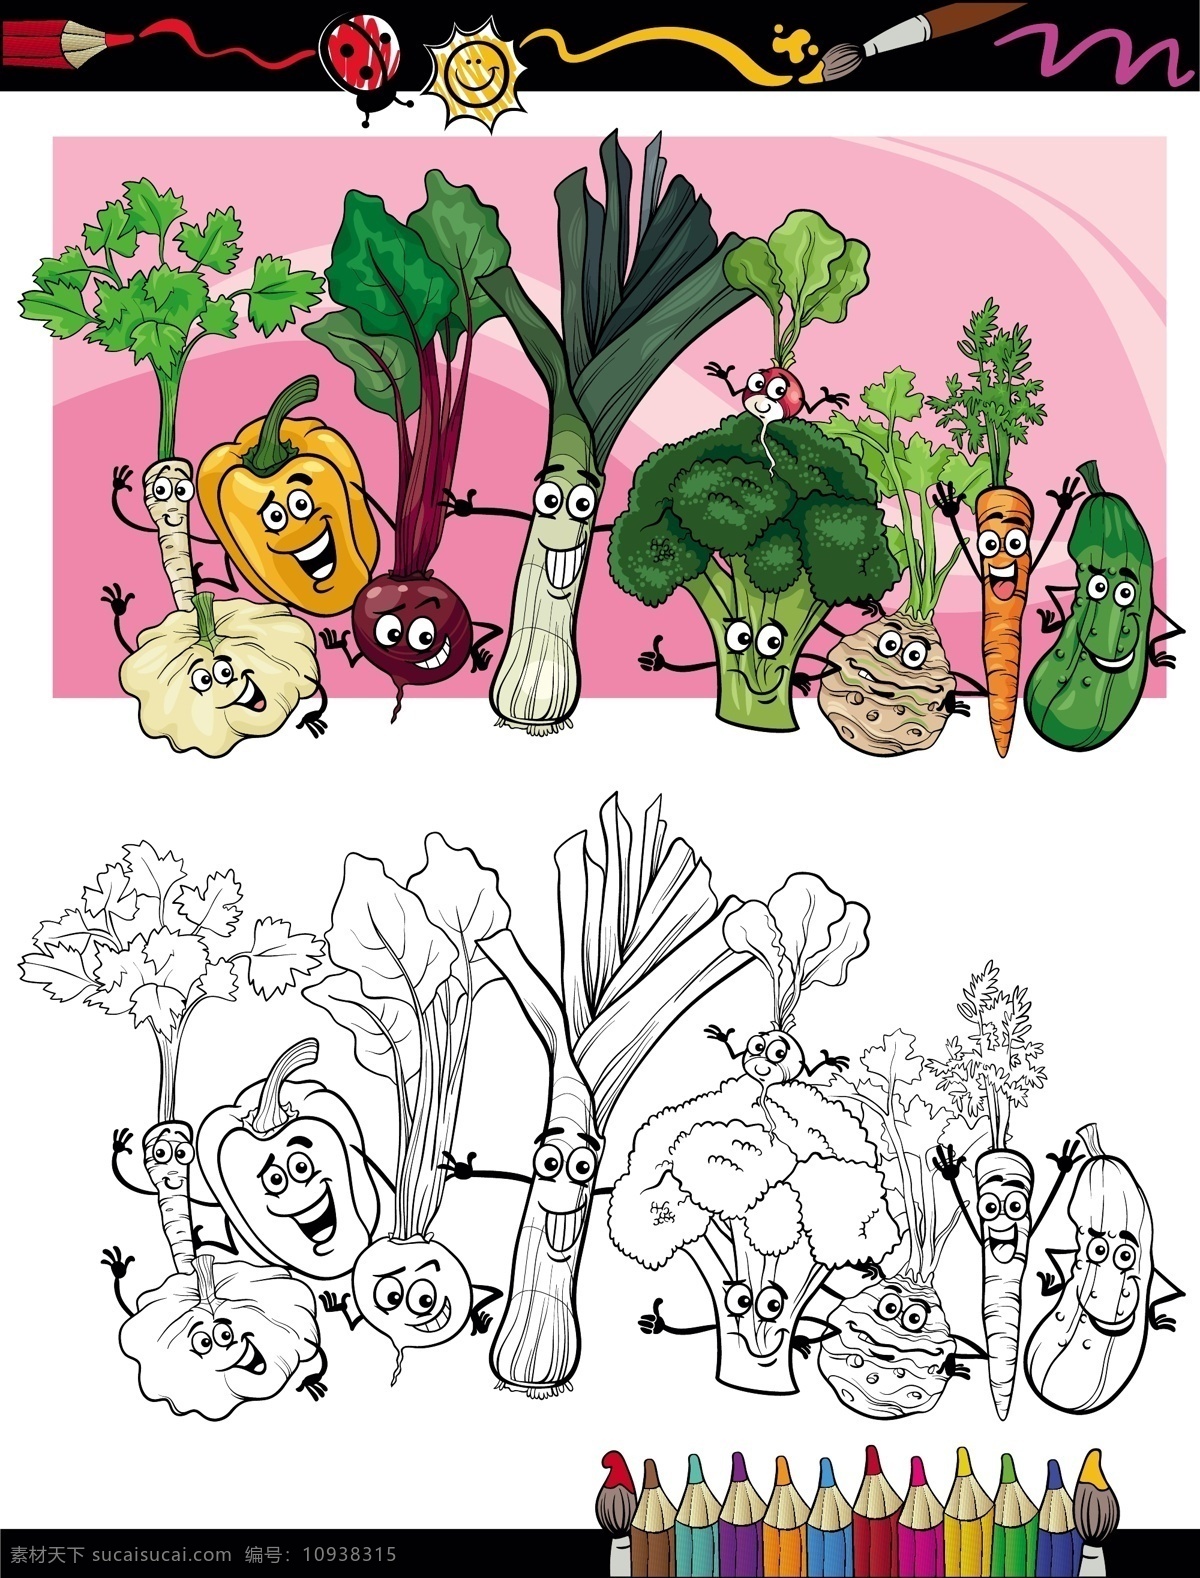 有趣 的卡 通 蔬菜 矢量图 矢量卡通 卡通 滑稽 表 白色